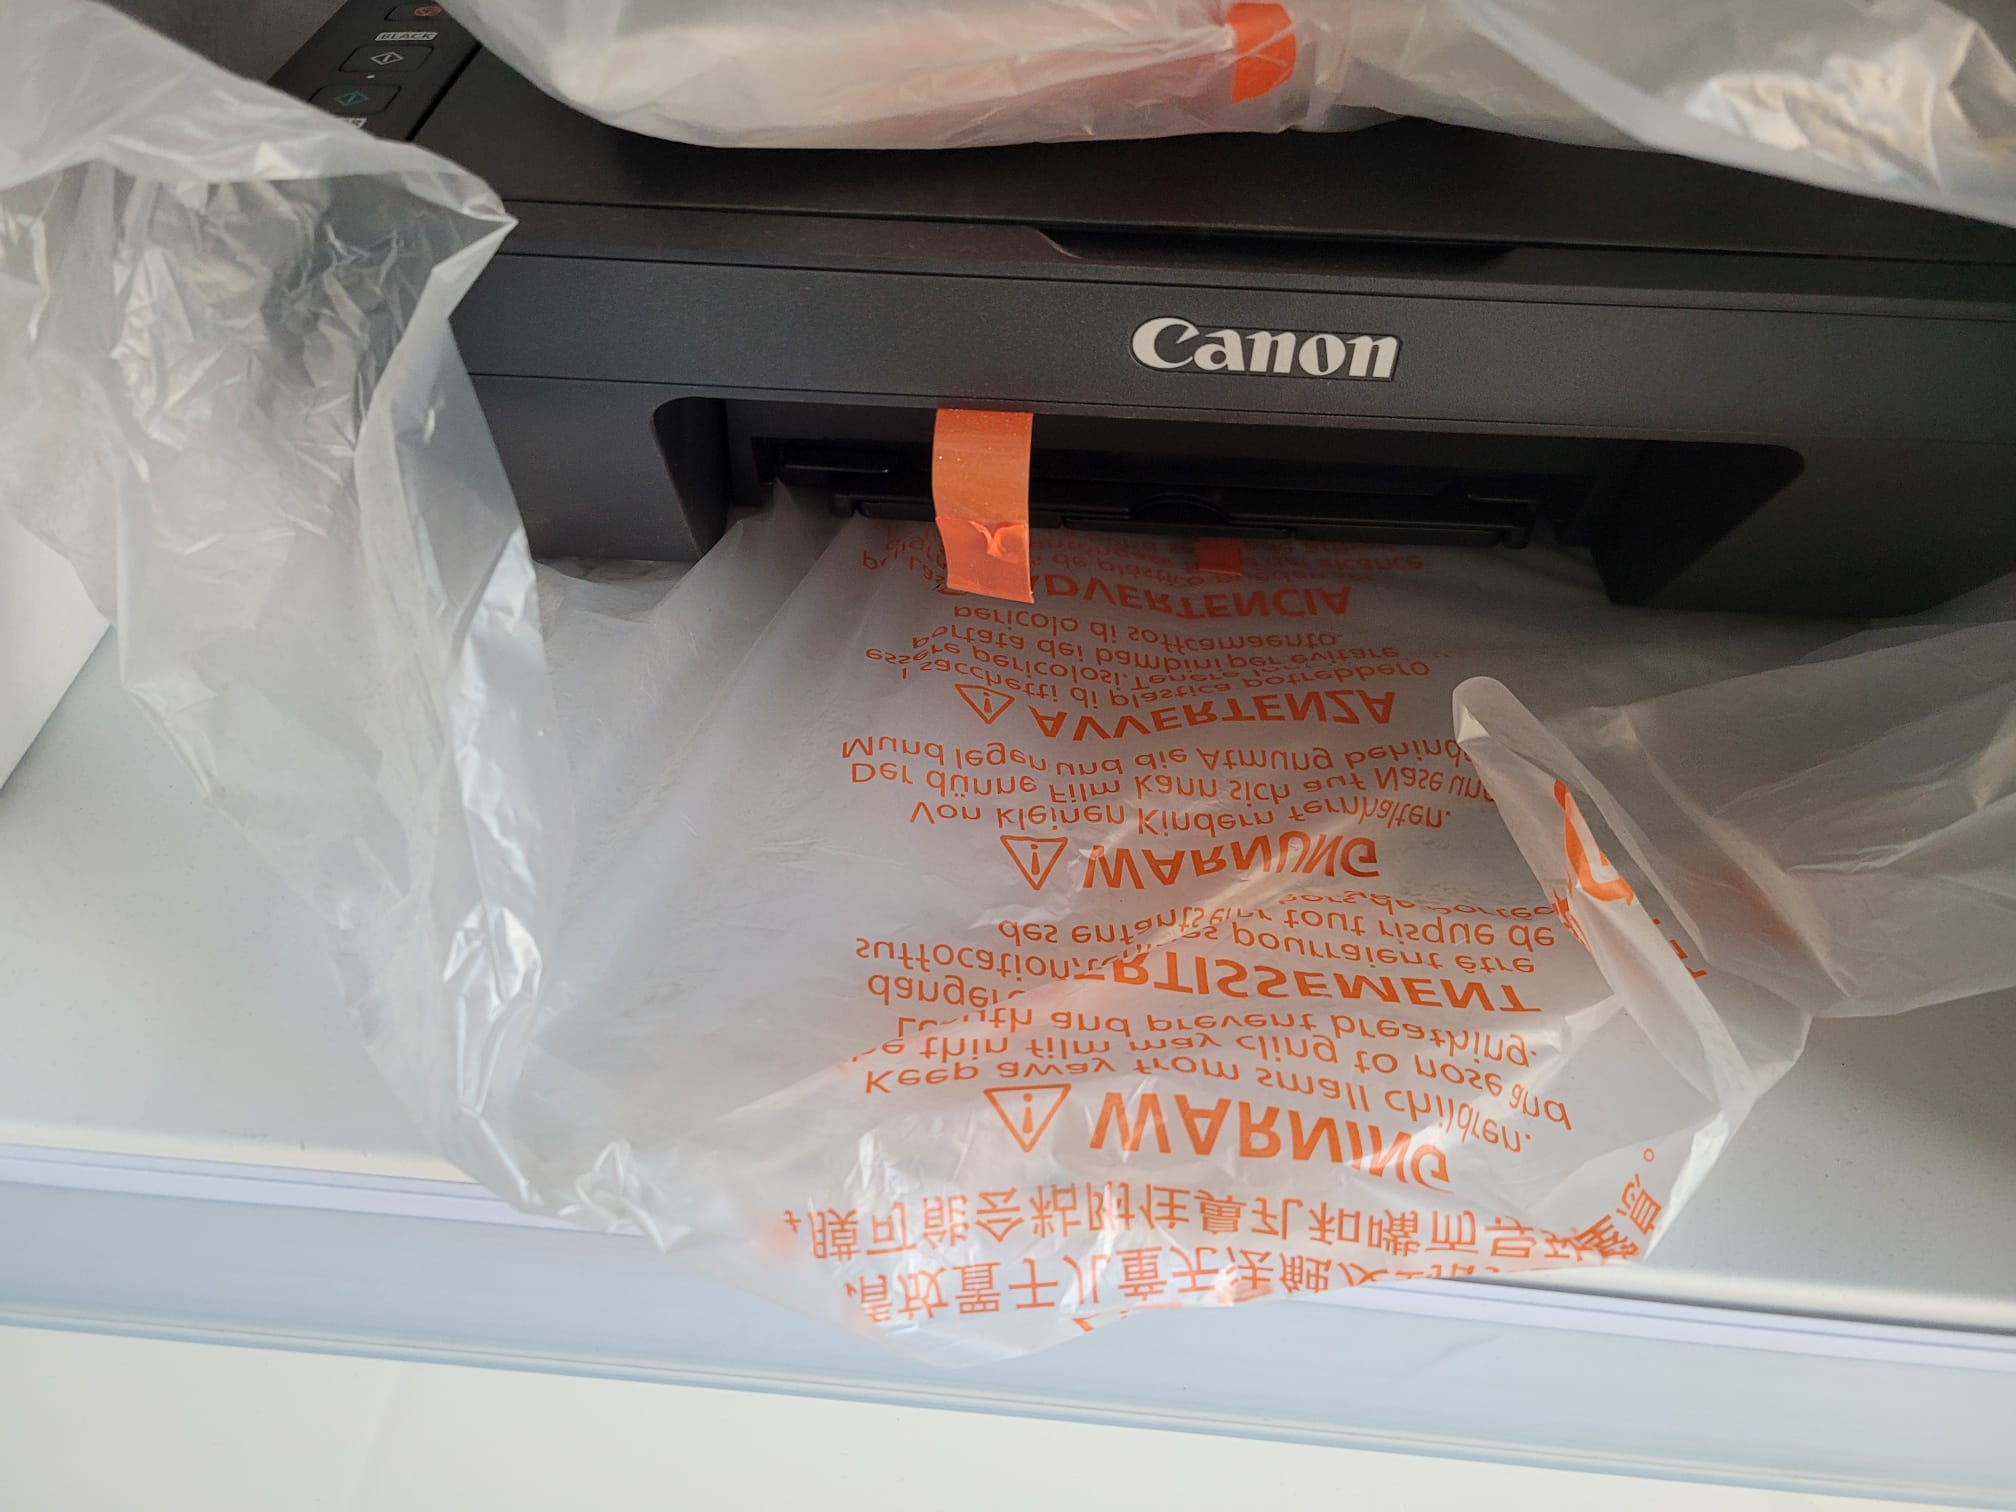 SATILDI] Sıfır - Garantili Canon E414 Kartuşlu Yazıcı Tarayıcı Fotokopi  850₺ | DonanımHaber Forum